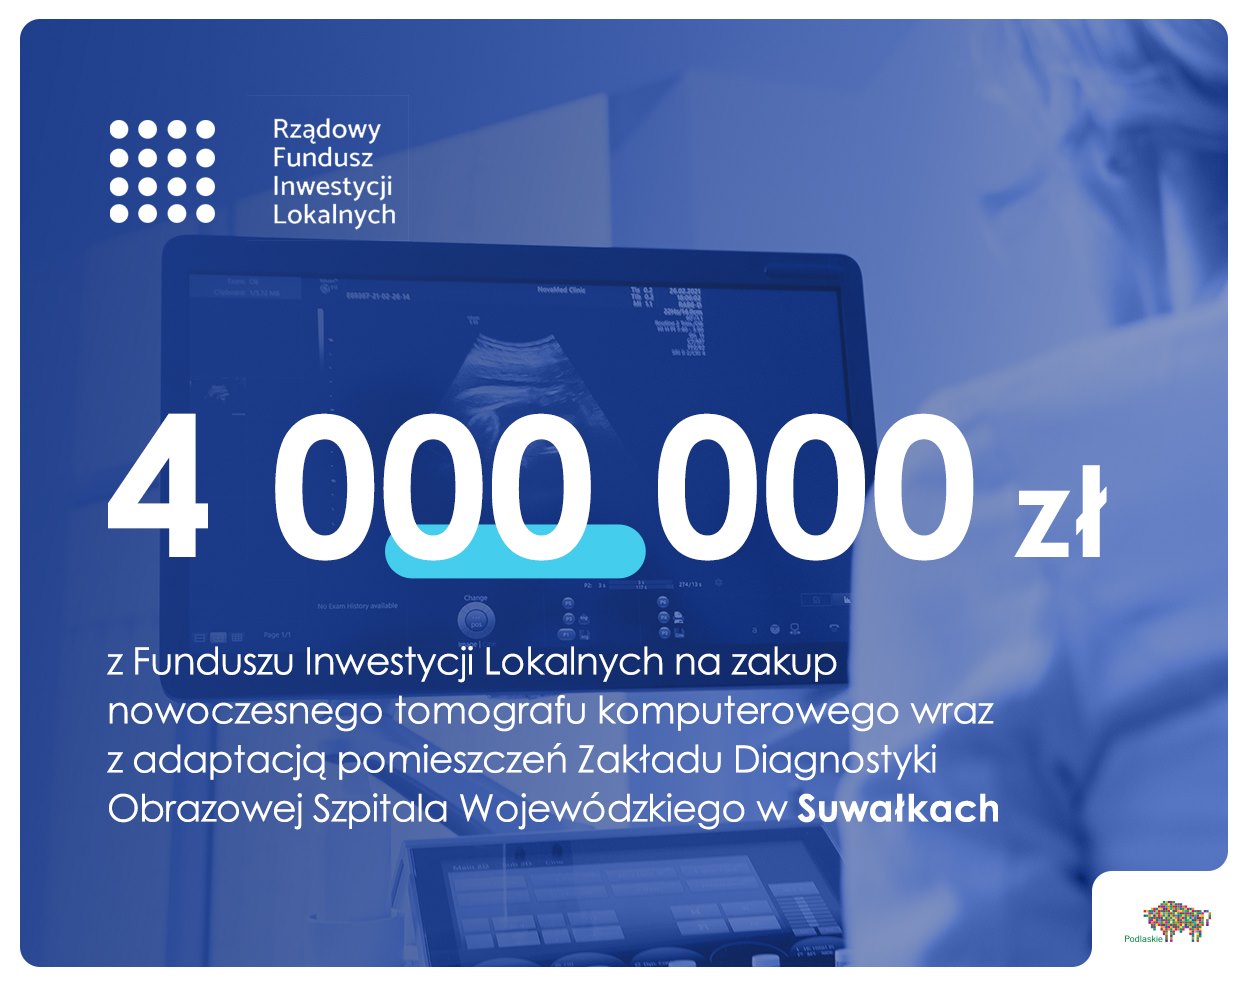 Plansza z napisem 4 mln zł dla szpitala z Suwałkach